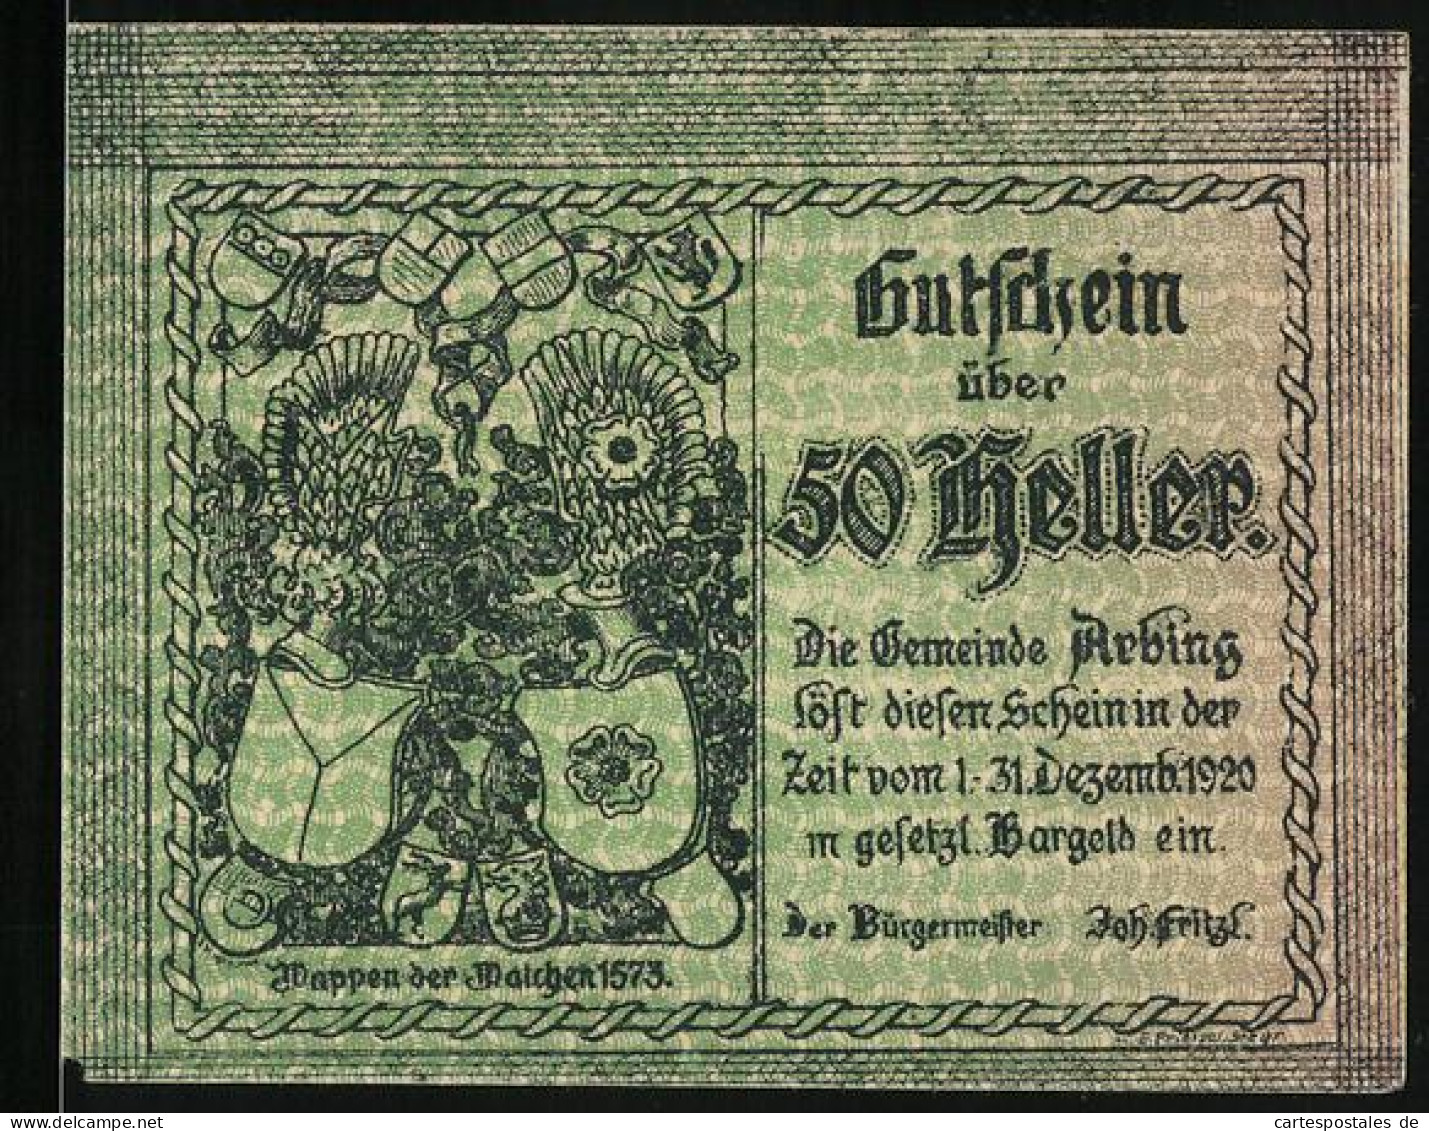 Notgeld Arbing 1920, 50 Heller, Wappen Der Walchen 1573, Alt-Arbing 1672  - Austria